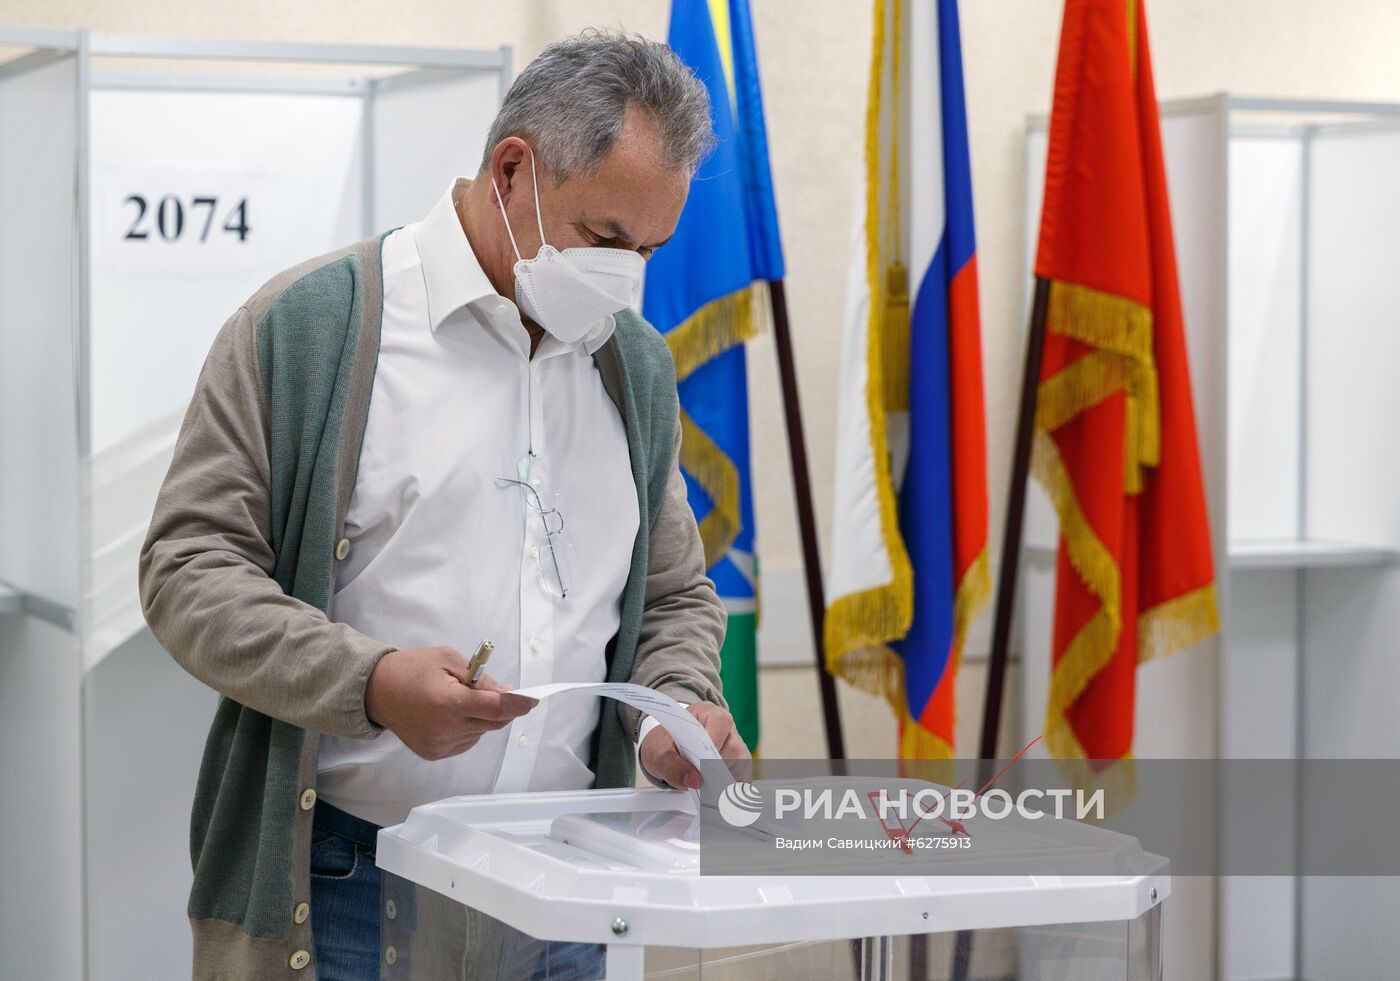 Министр обороны С. Шойгу принял участие в голосовании по поправкам в Конституцию РФ